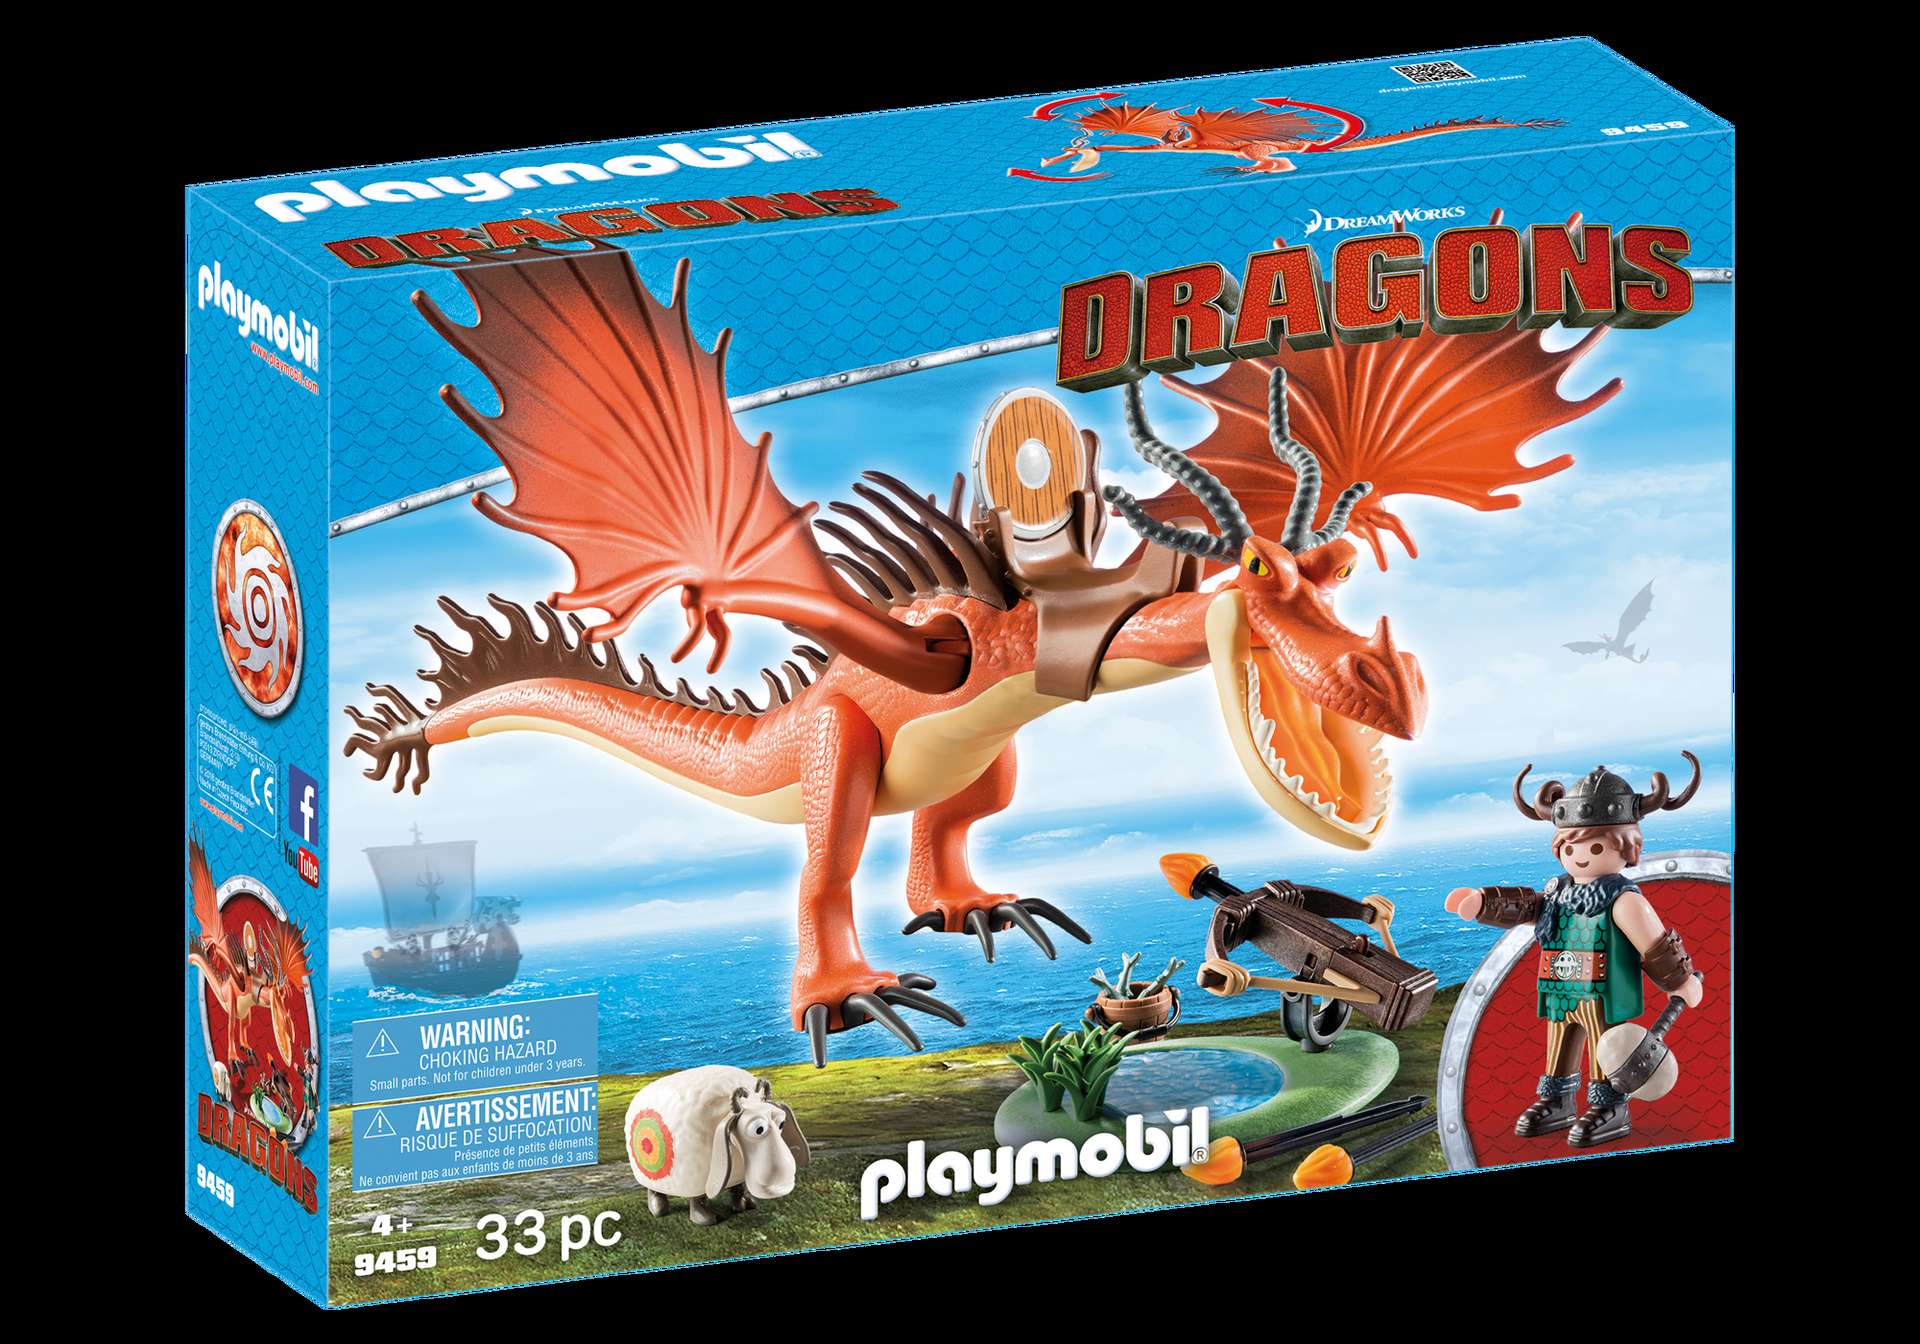 Playmobil - Dragons - Snotlout and Hookfang (9459)